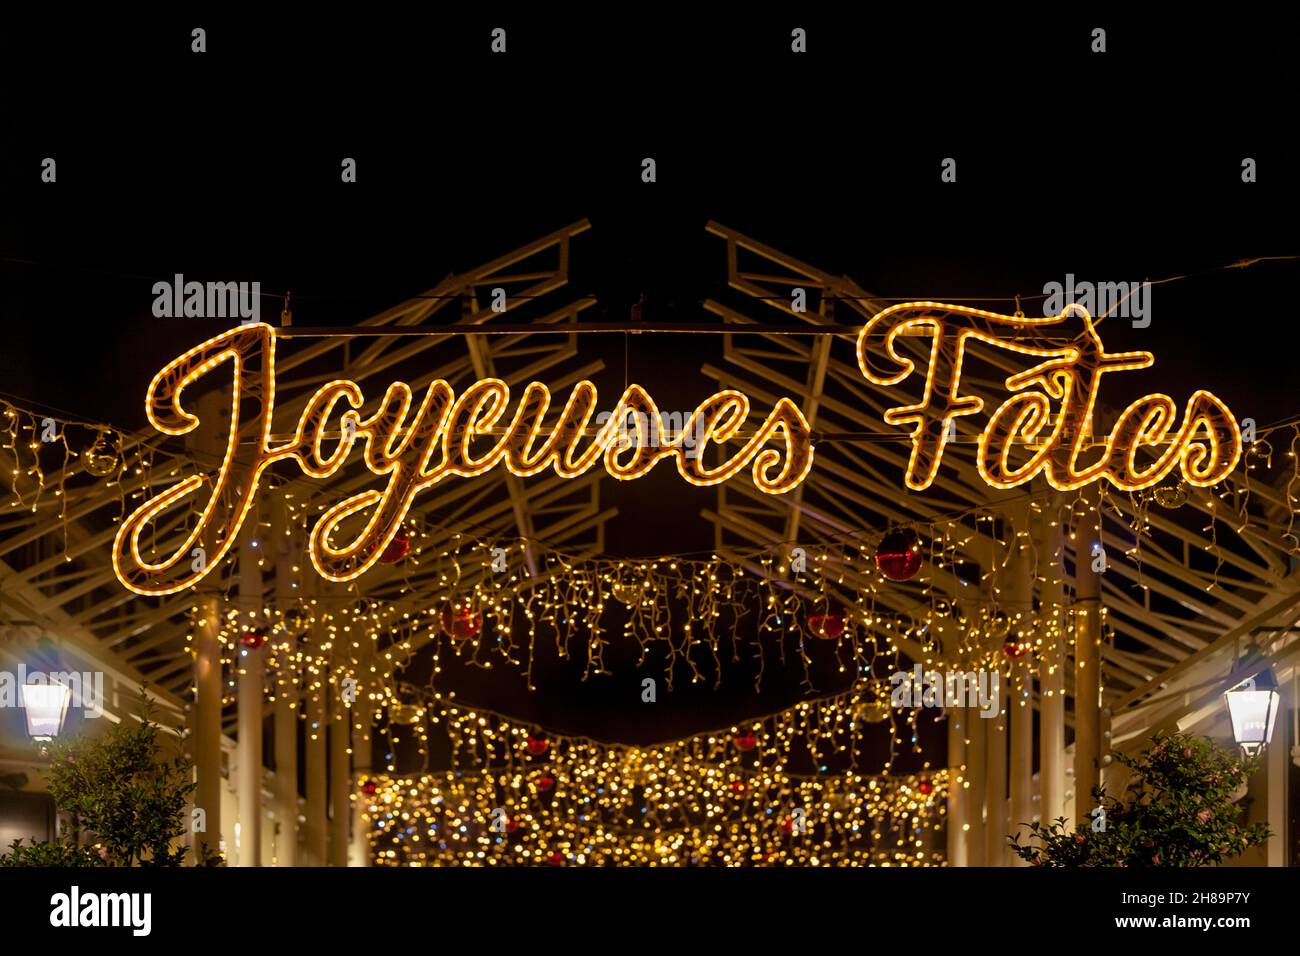 Weihnachtsbeleuchtung Sprichwort auf Französisch - Joyeuses Fetes - Bedeutung auf Englisch - Happy Holidays -. Stockfoto